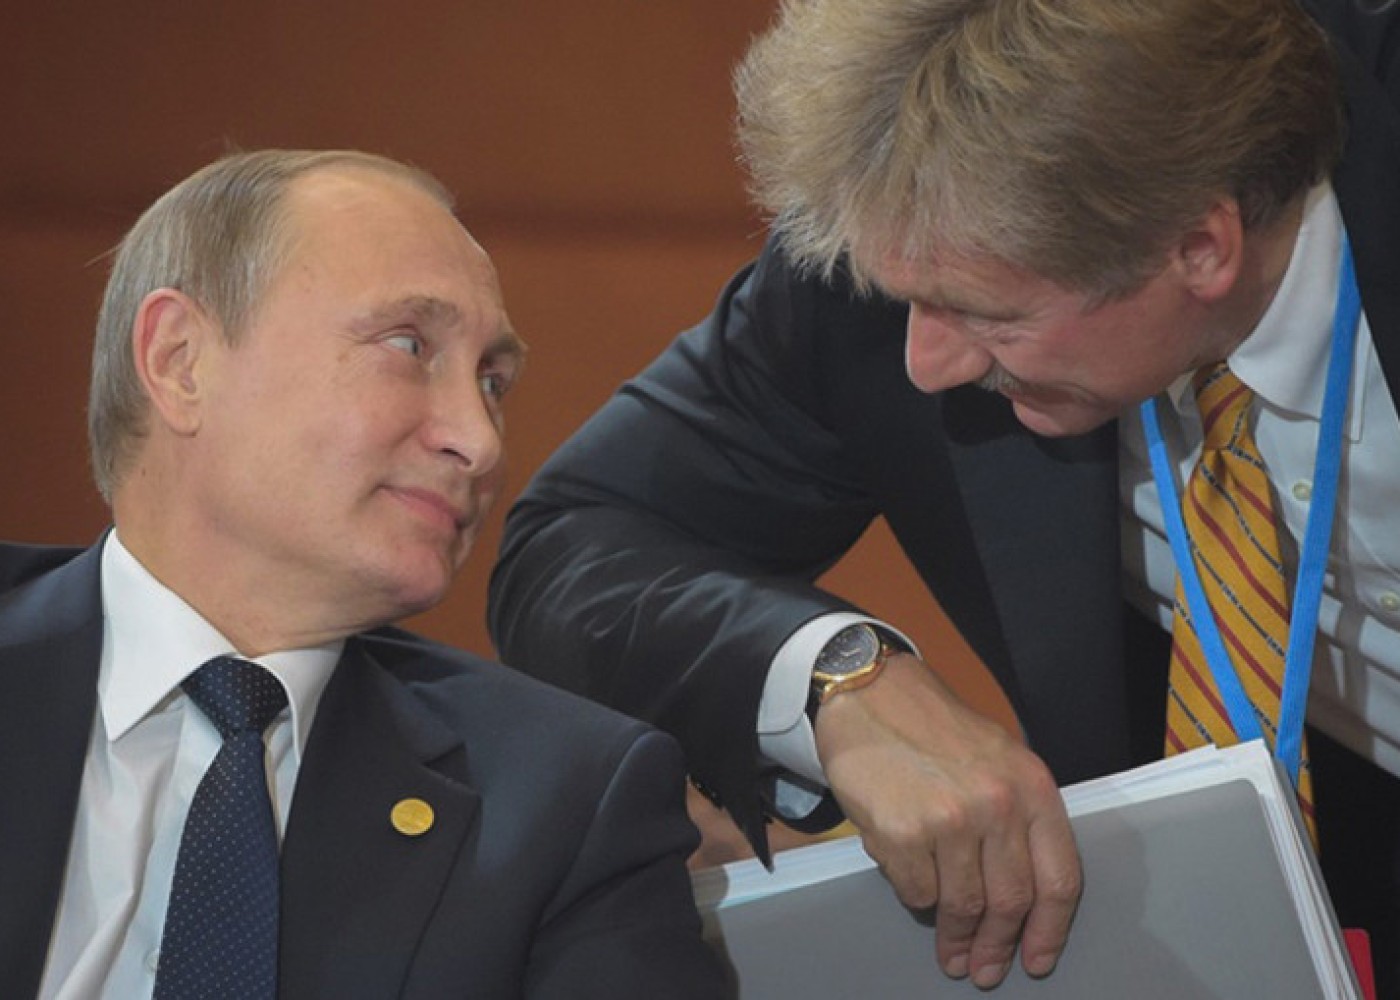 "Putindən qorxmaq lazım deyil" - Peskovdan Litva prezidentinə cavab